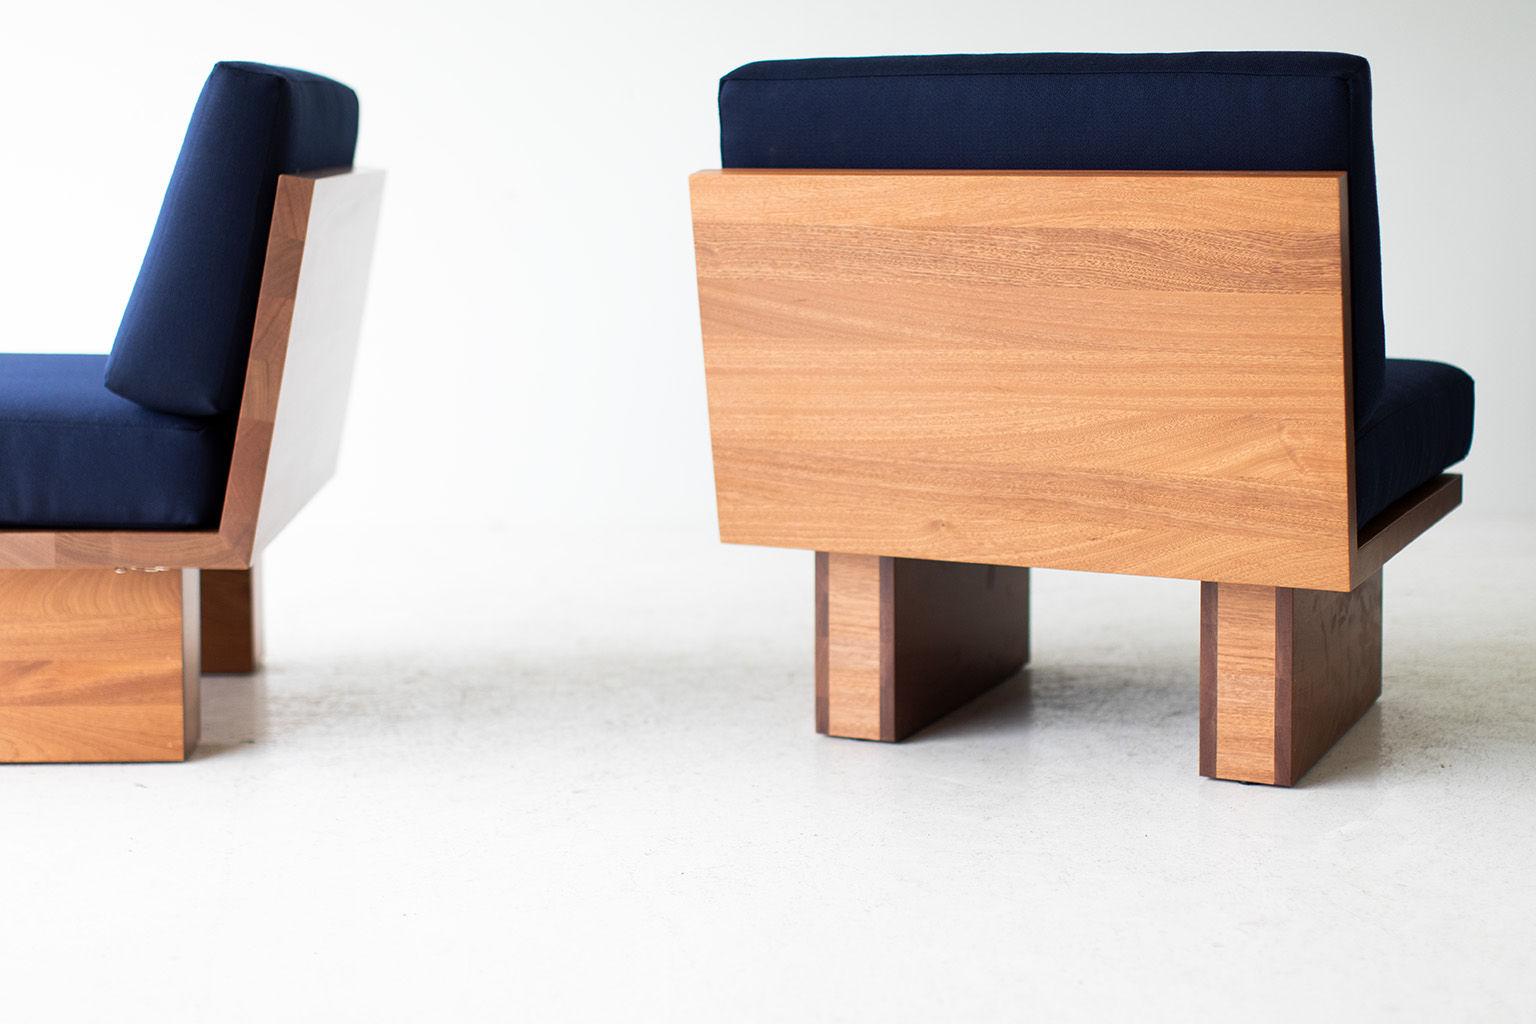 Dieser moderne Suelo-Stuhl für den Außenbereich wird in Ohio, USA, aus Massivholz gefertigt. Diese Silhouette ist einfach, modern und schlank mit bequemen Rücken- und Sitzkissen. Der Holzrahmen ist für den Einsatz im Freien geeignet und mit einer